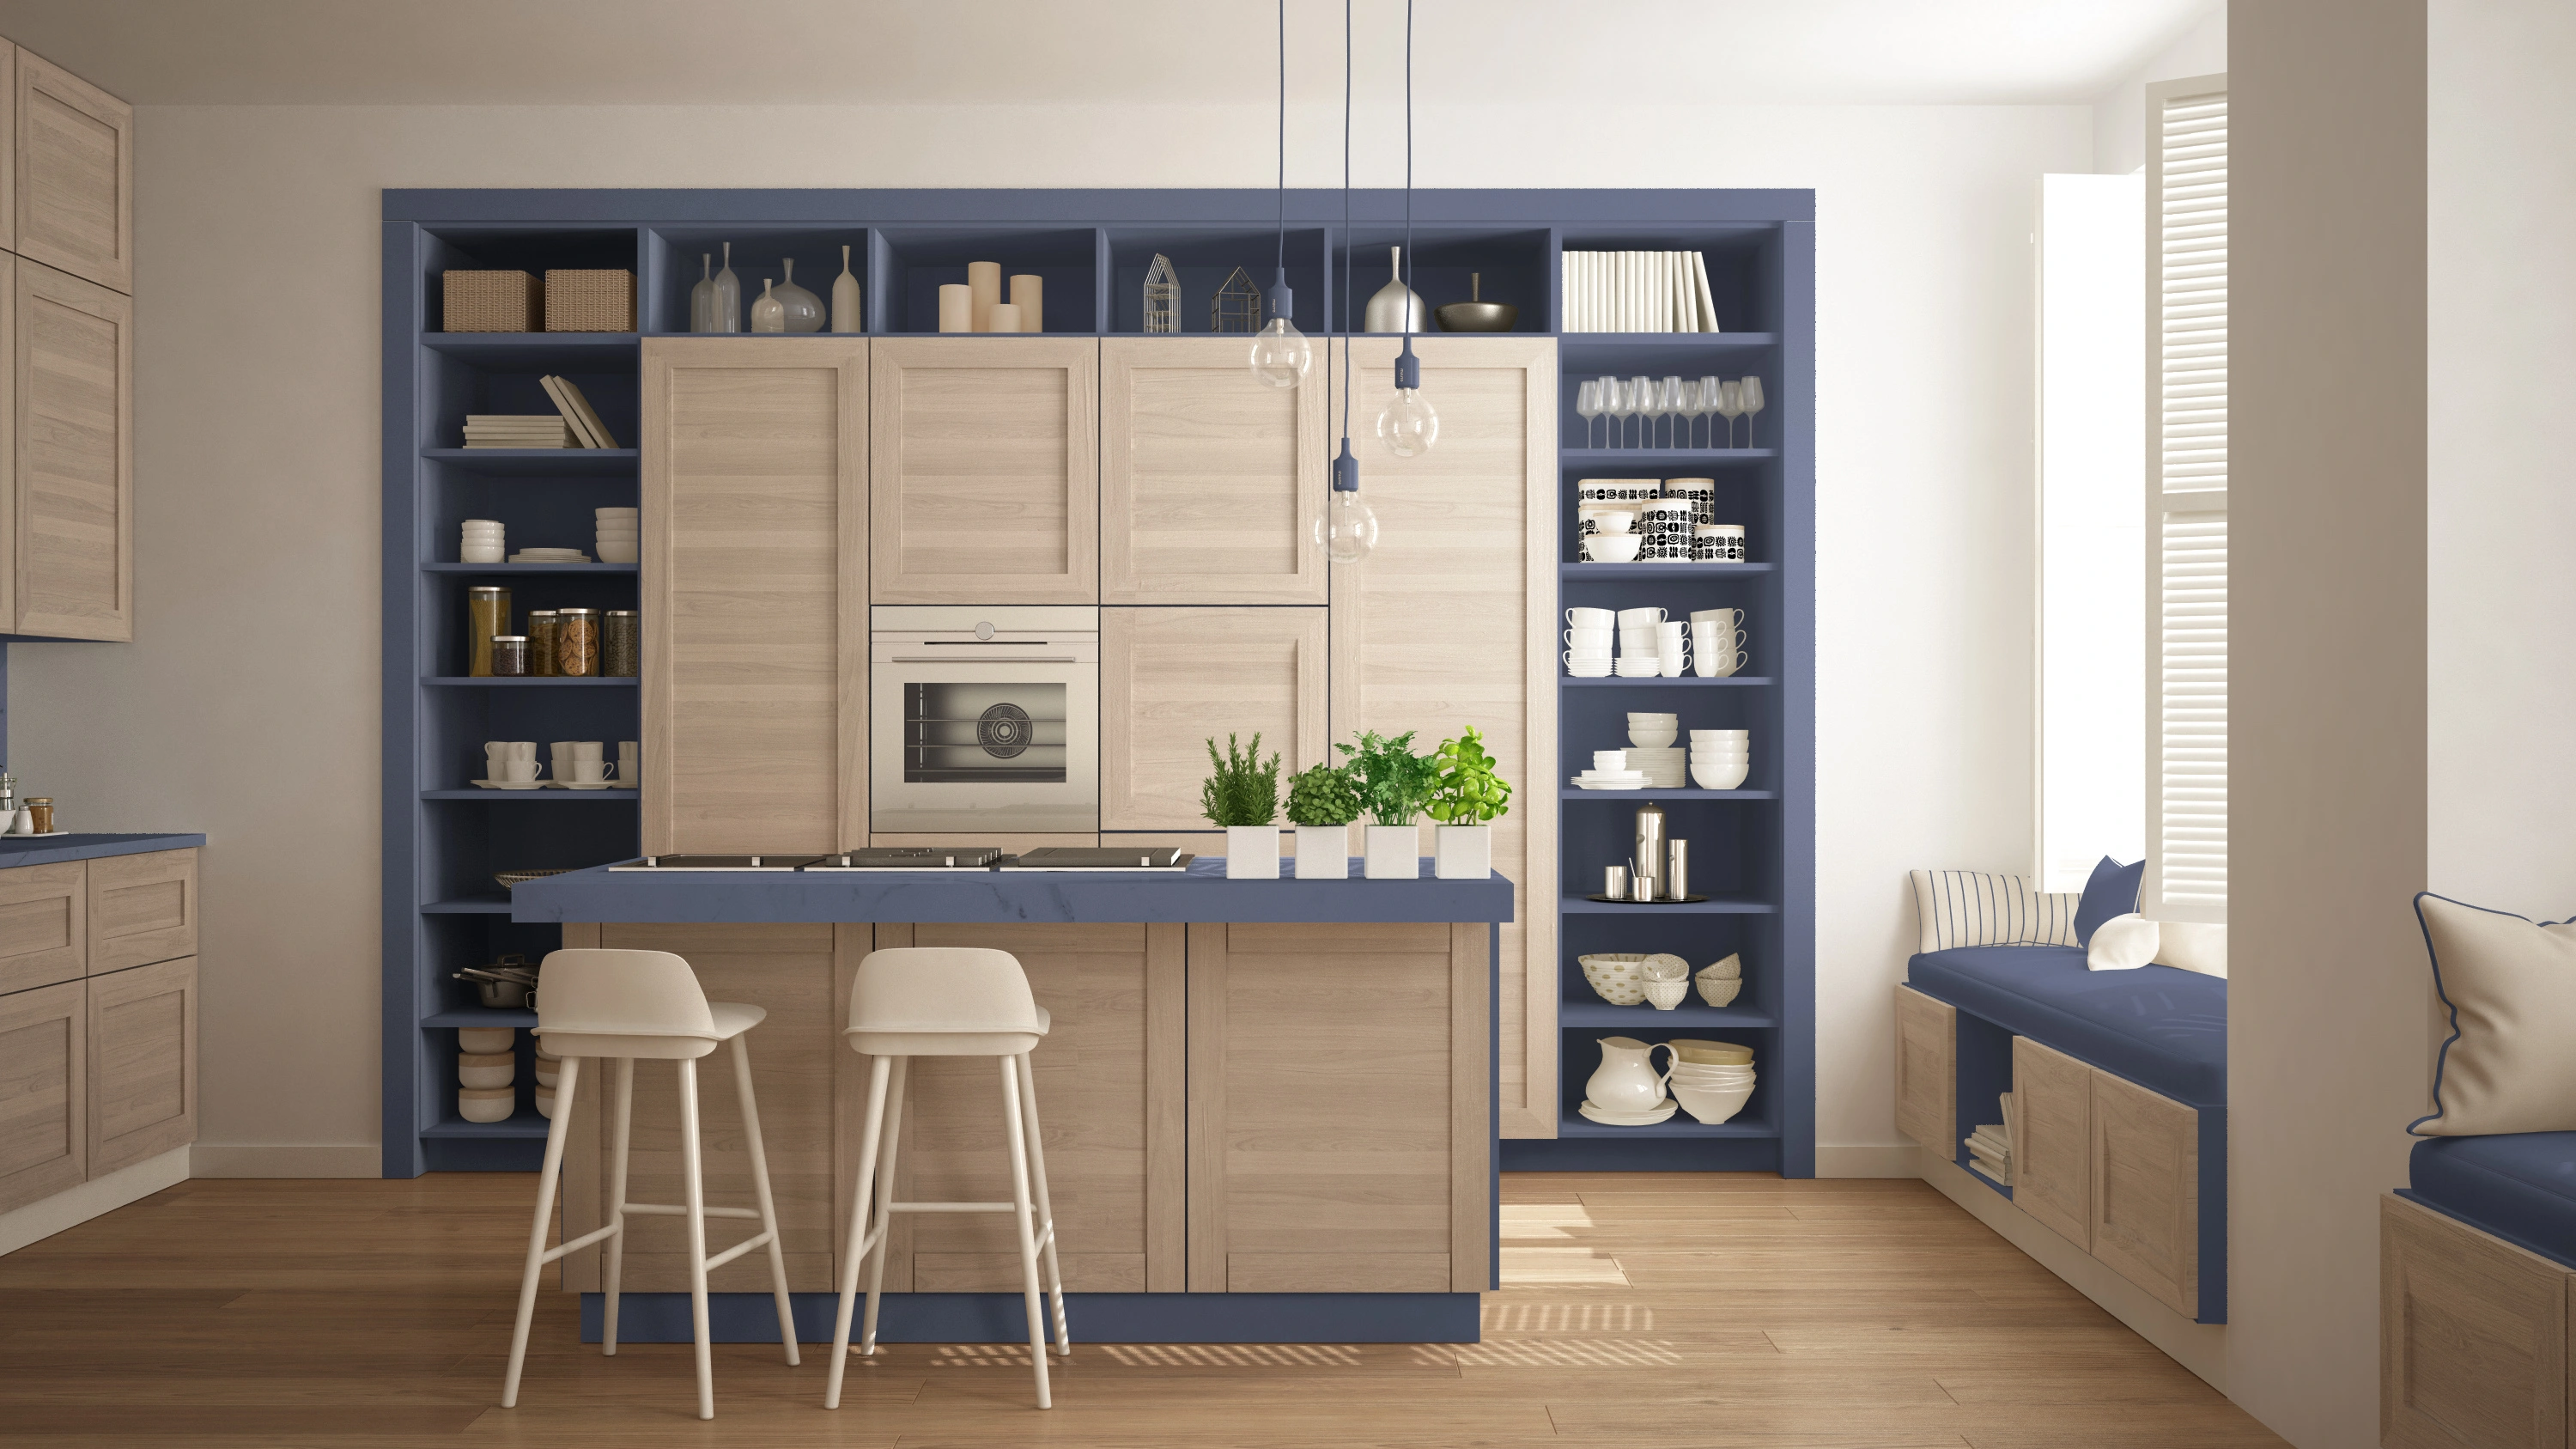 Inspiracja prezentująca kuchnię w kolorze beżowym z niebieskimi półkami, styl marynistyczny. Element charakterystyczny: niebieskie półki